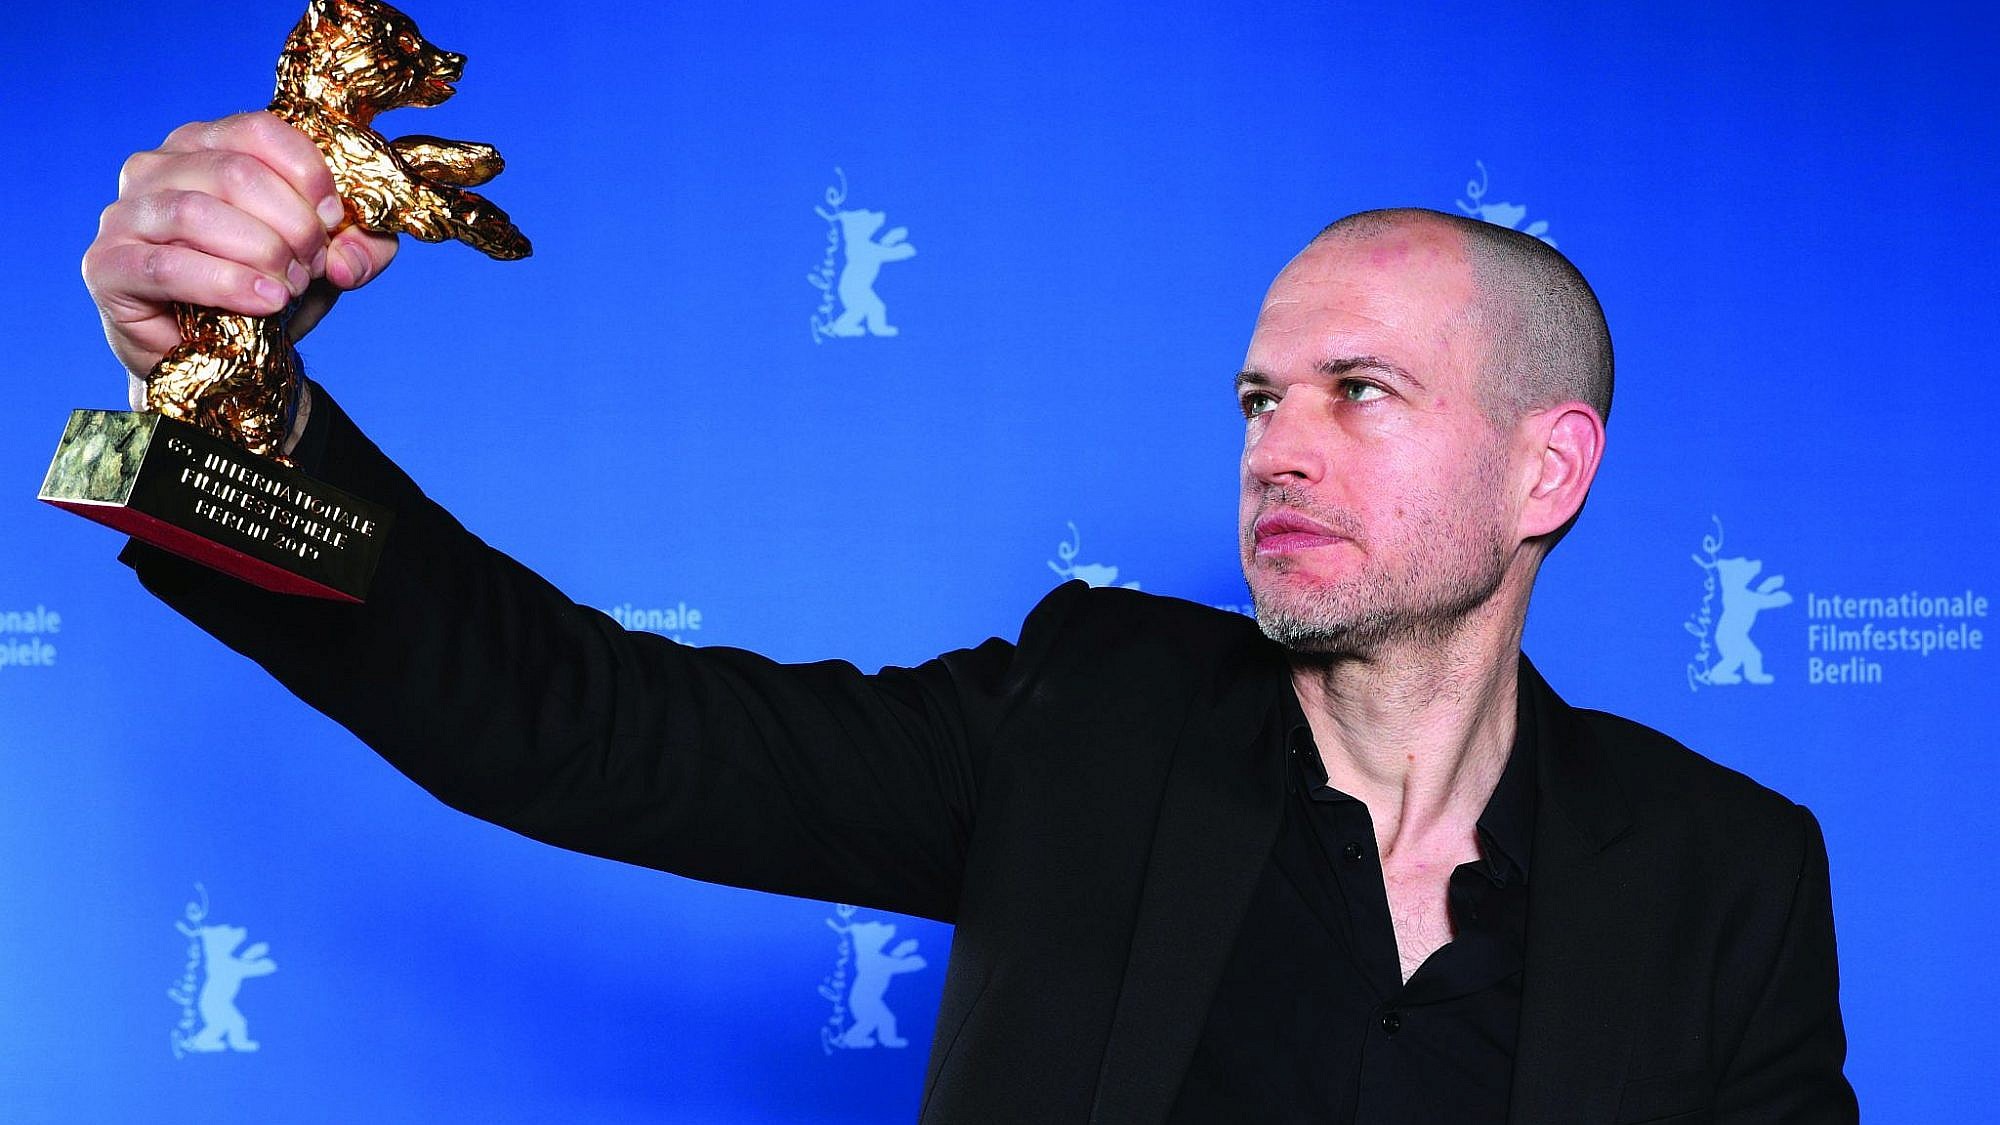 נדב לפיד זוכה בפסטיבל ברלין, פברואר 2019 (צילום: כריסטוף סודר\גטי אימג'ס)